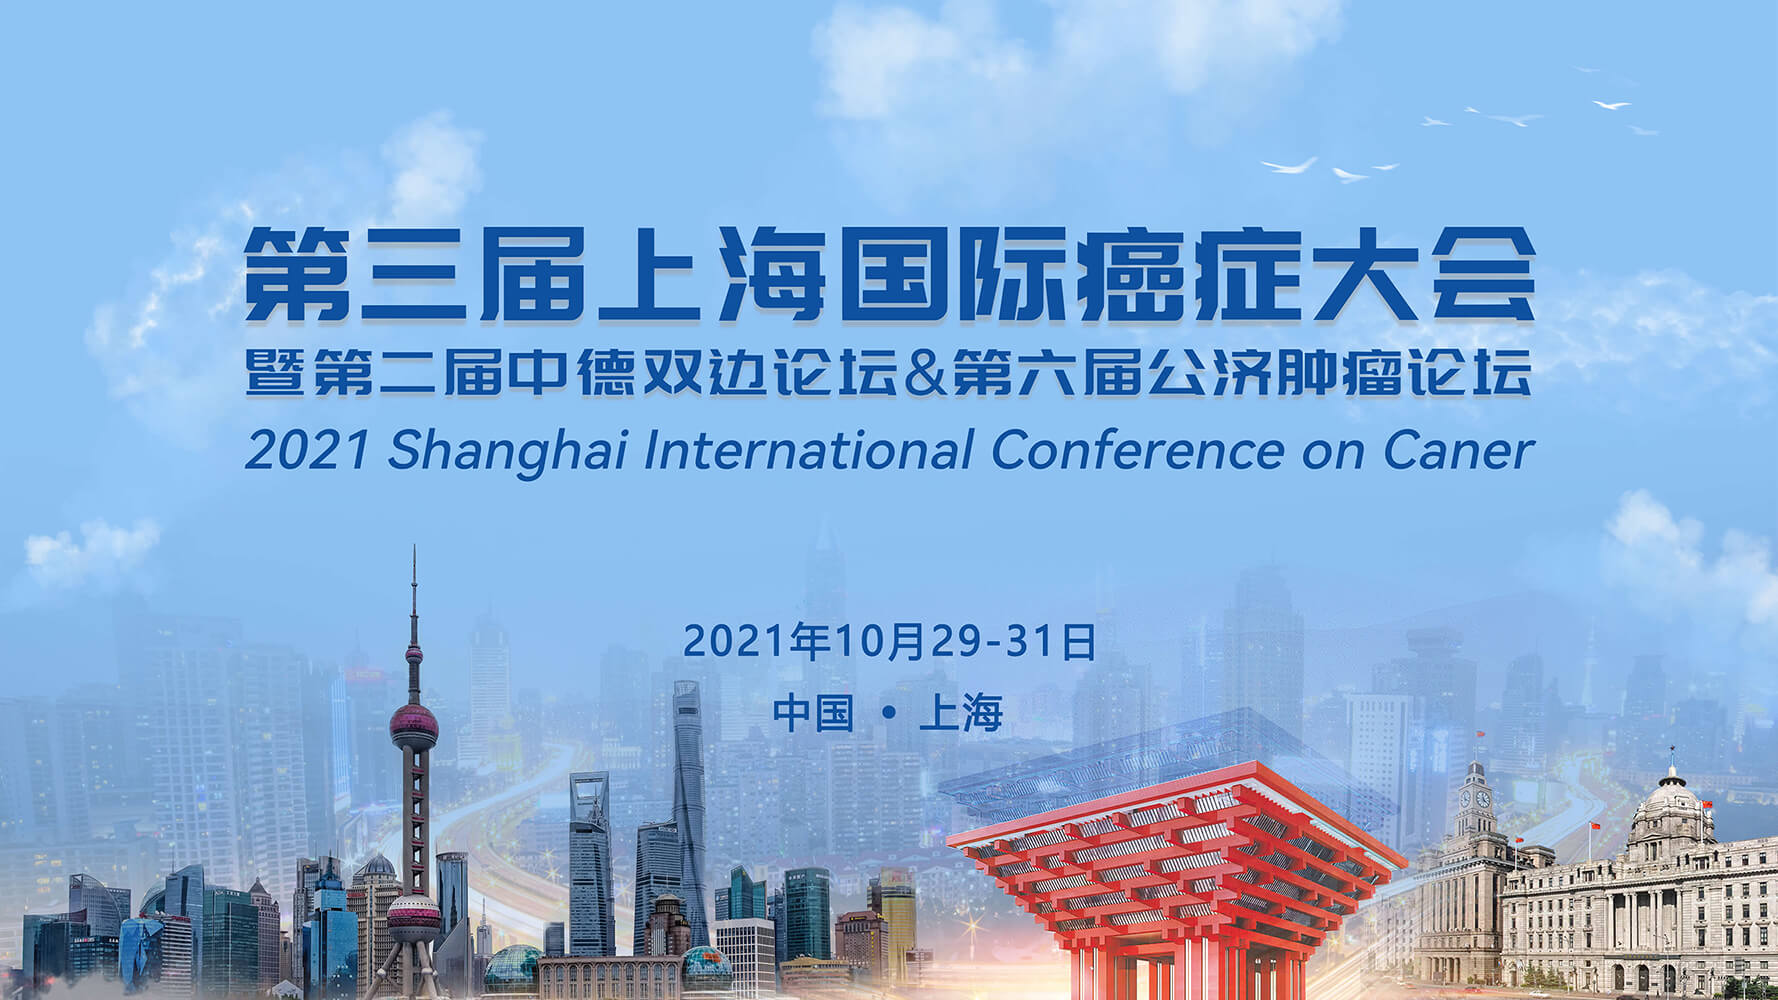 吉尔生化邀您参加2021第三届上海国际癌症大会